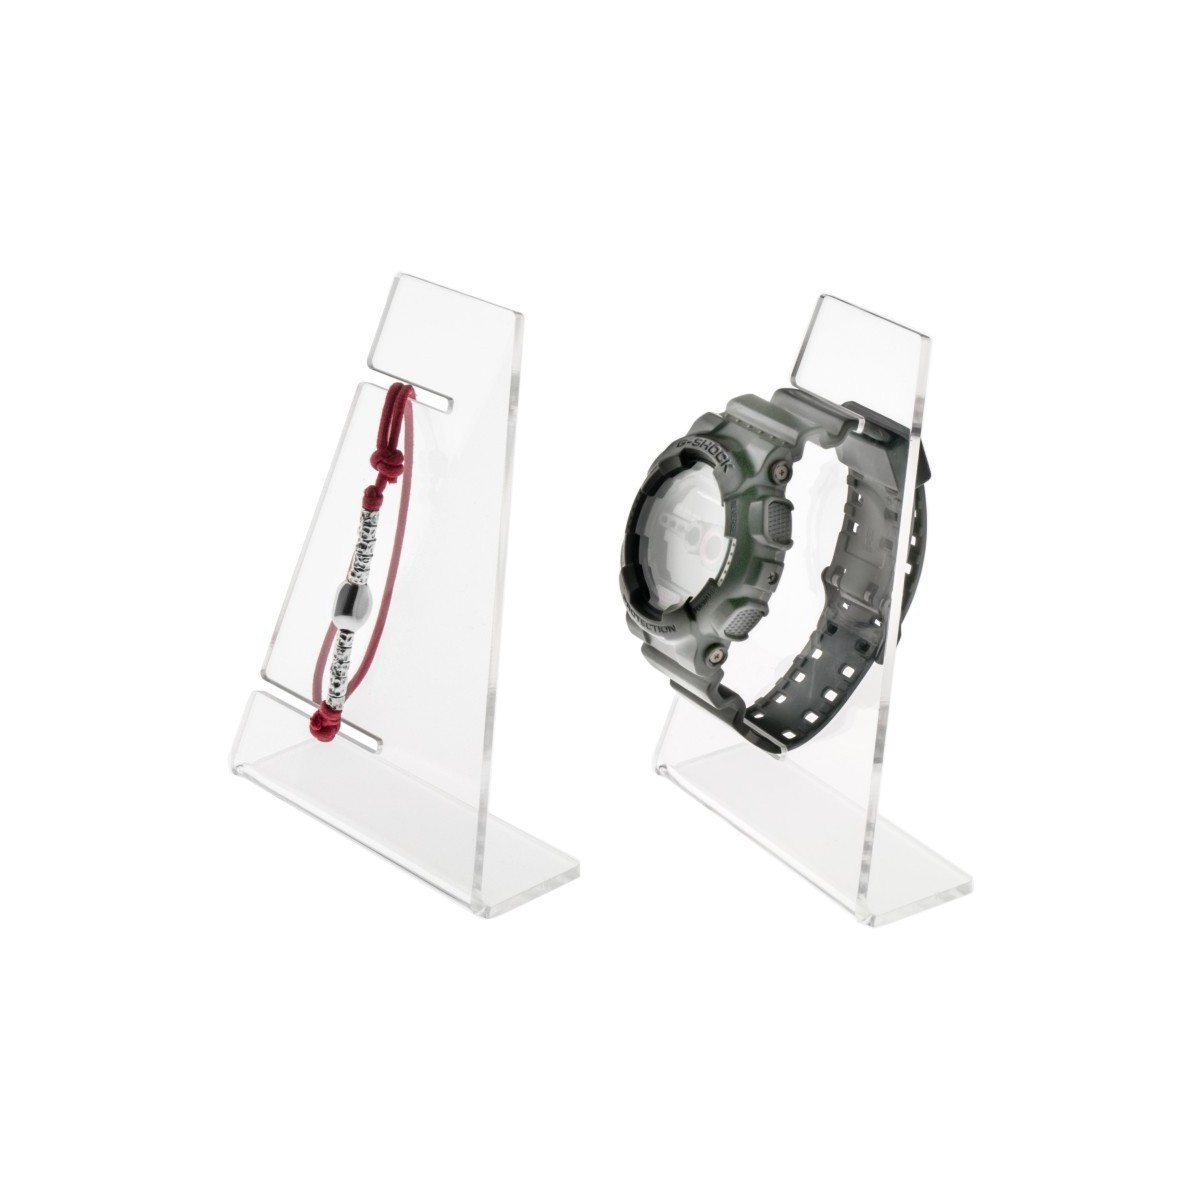 Uhrenhalter aus Plexiglass, transparent, für 1 Uhr